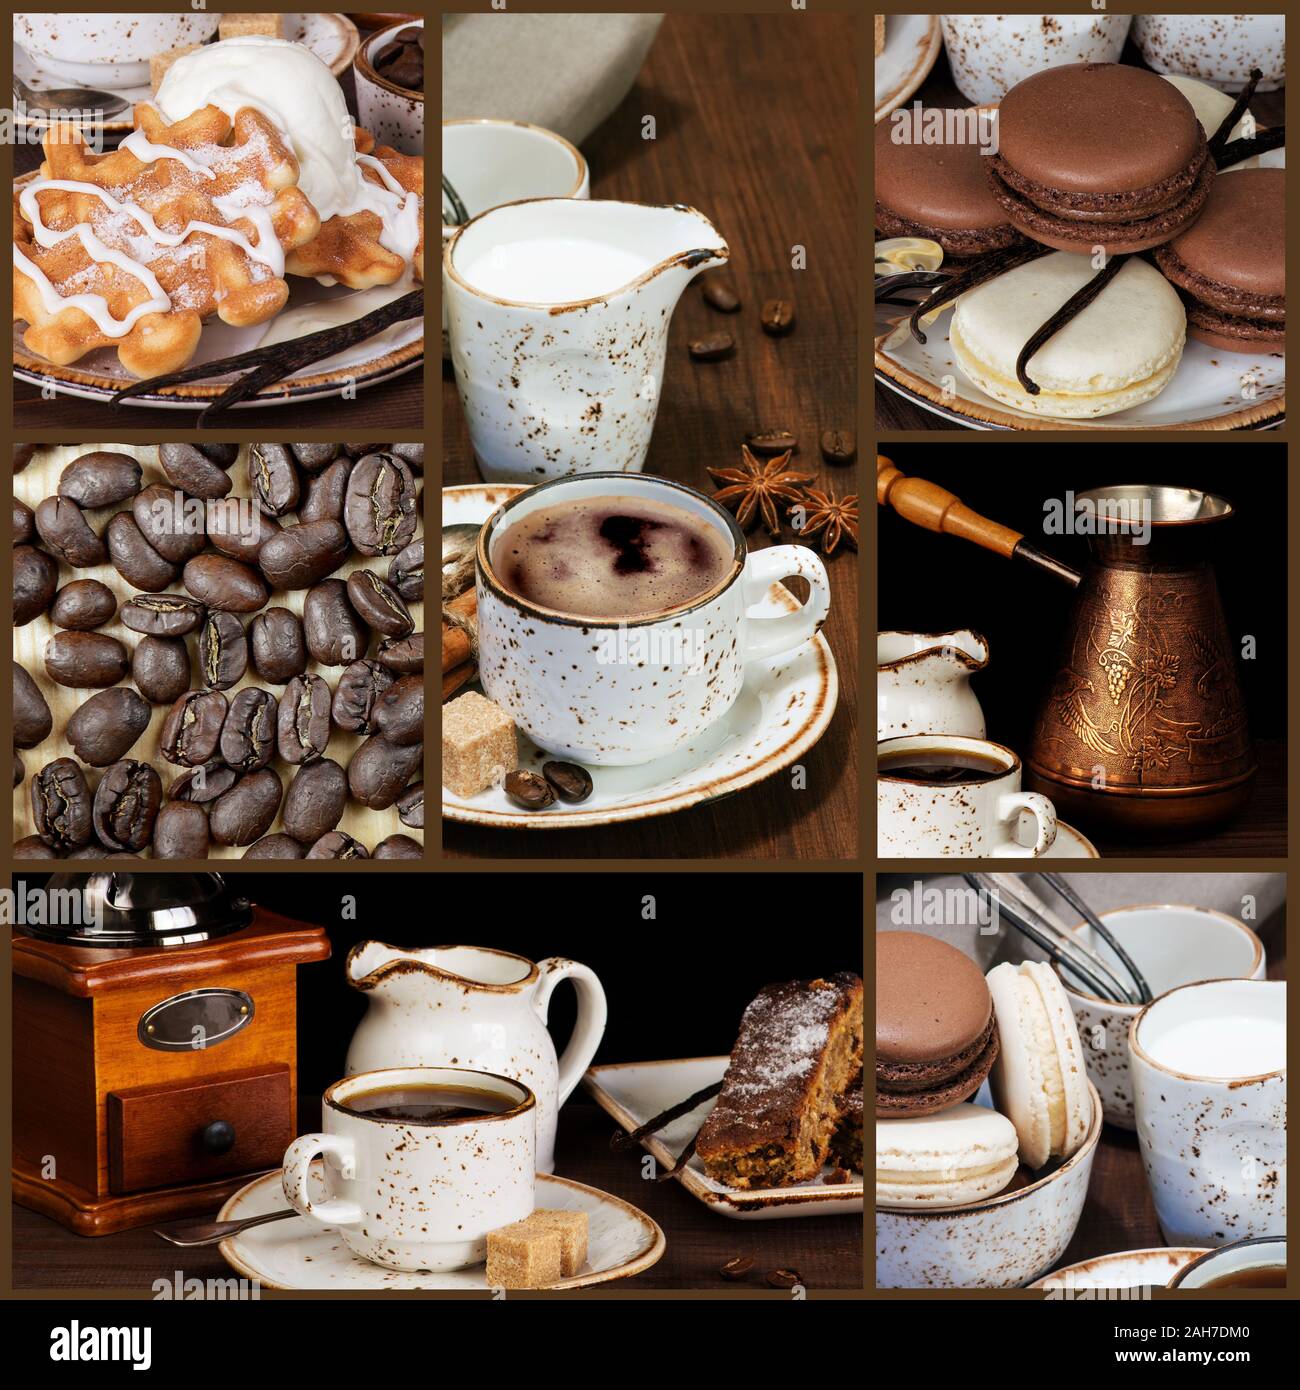 Serie di immagini di caffè e dolci in stile vintage Foto Stock